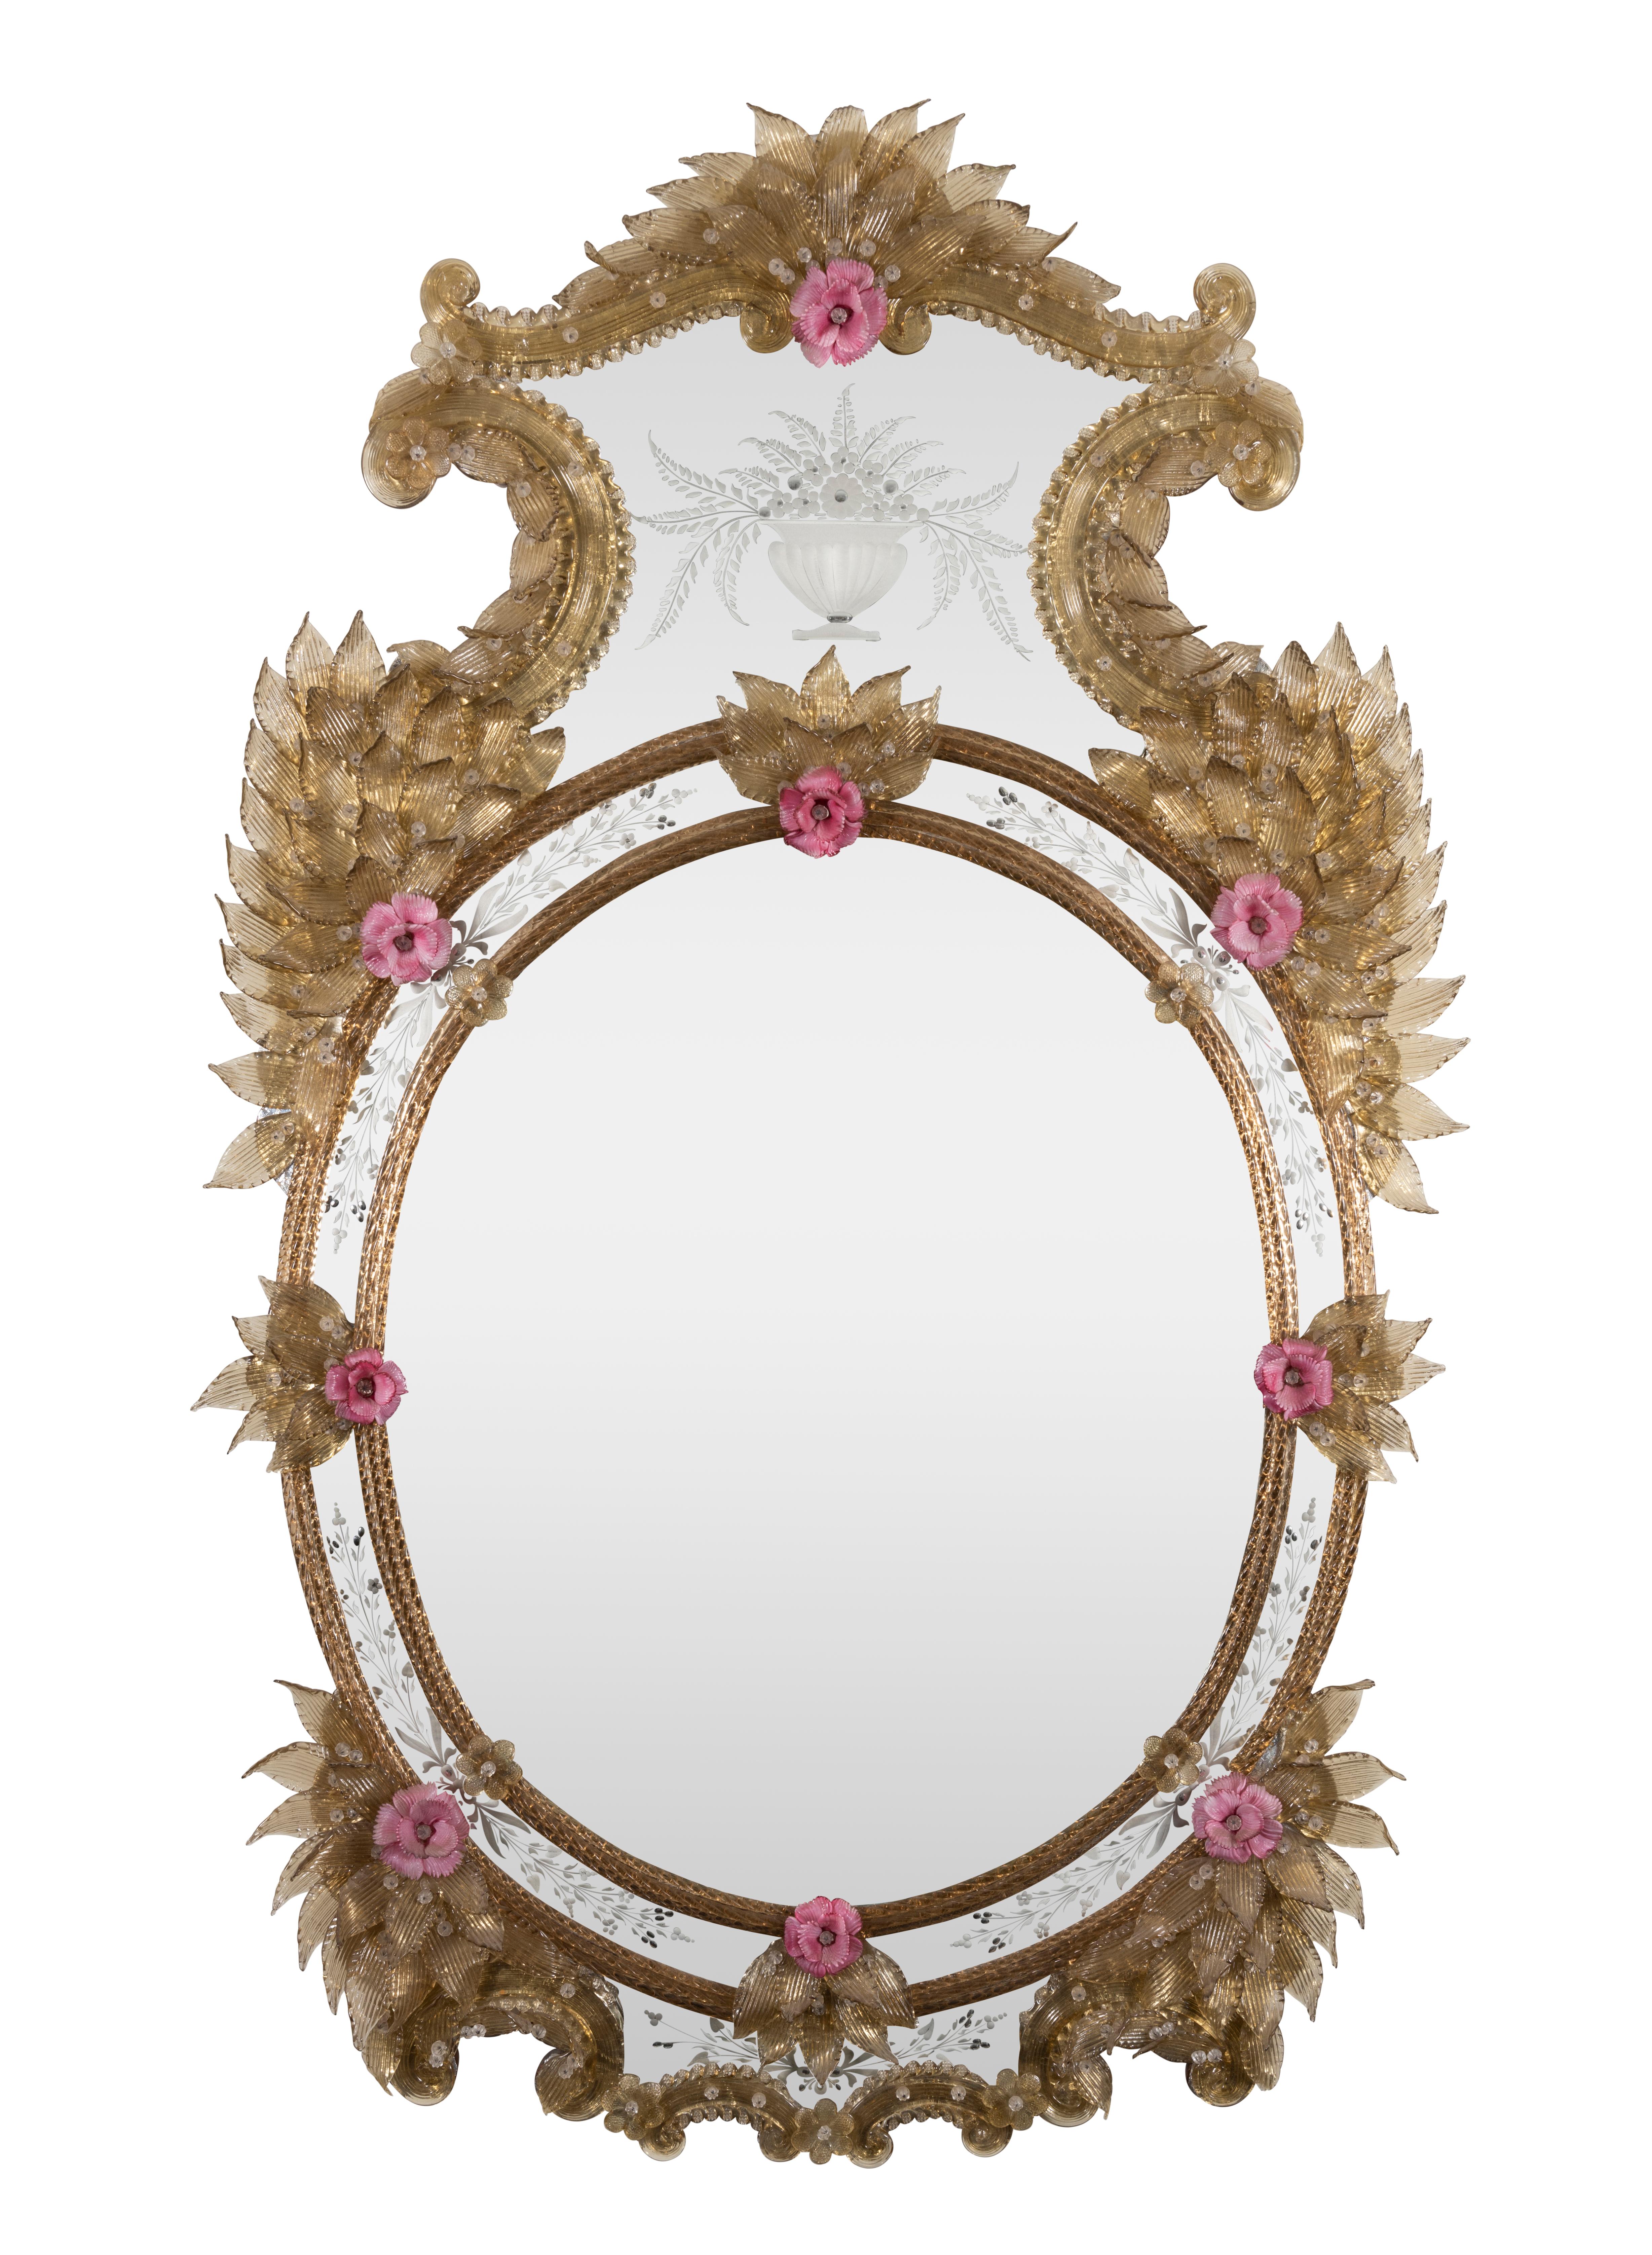 Ein ovaler venezianischer Spiegel mit vergoldeten Intarsien, farbigem Glas und Ätzungen aus dem späten 19.

Der hohe, geformte Scheitel wird von gegenläufigen C- und S-Rollen mit überlappenden Blättern eingerahmt, in der Mitte des Glases befindet